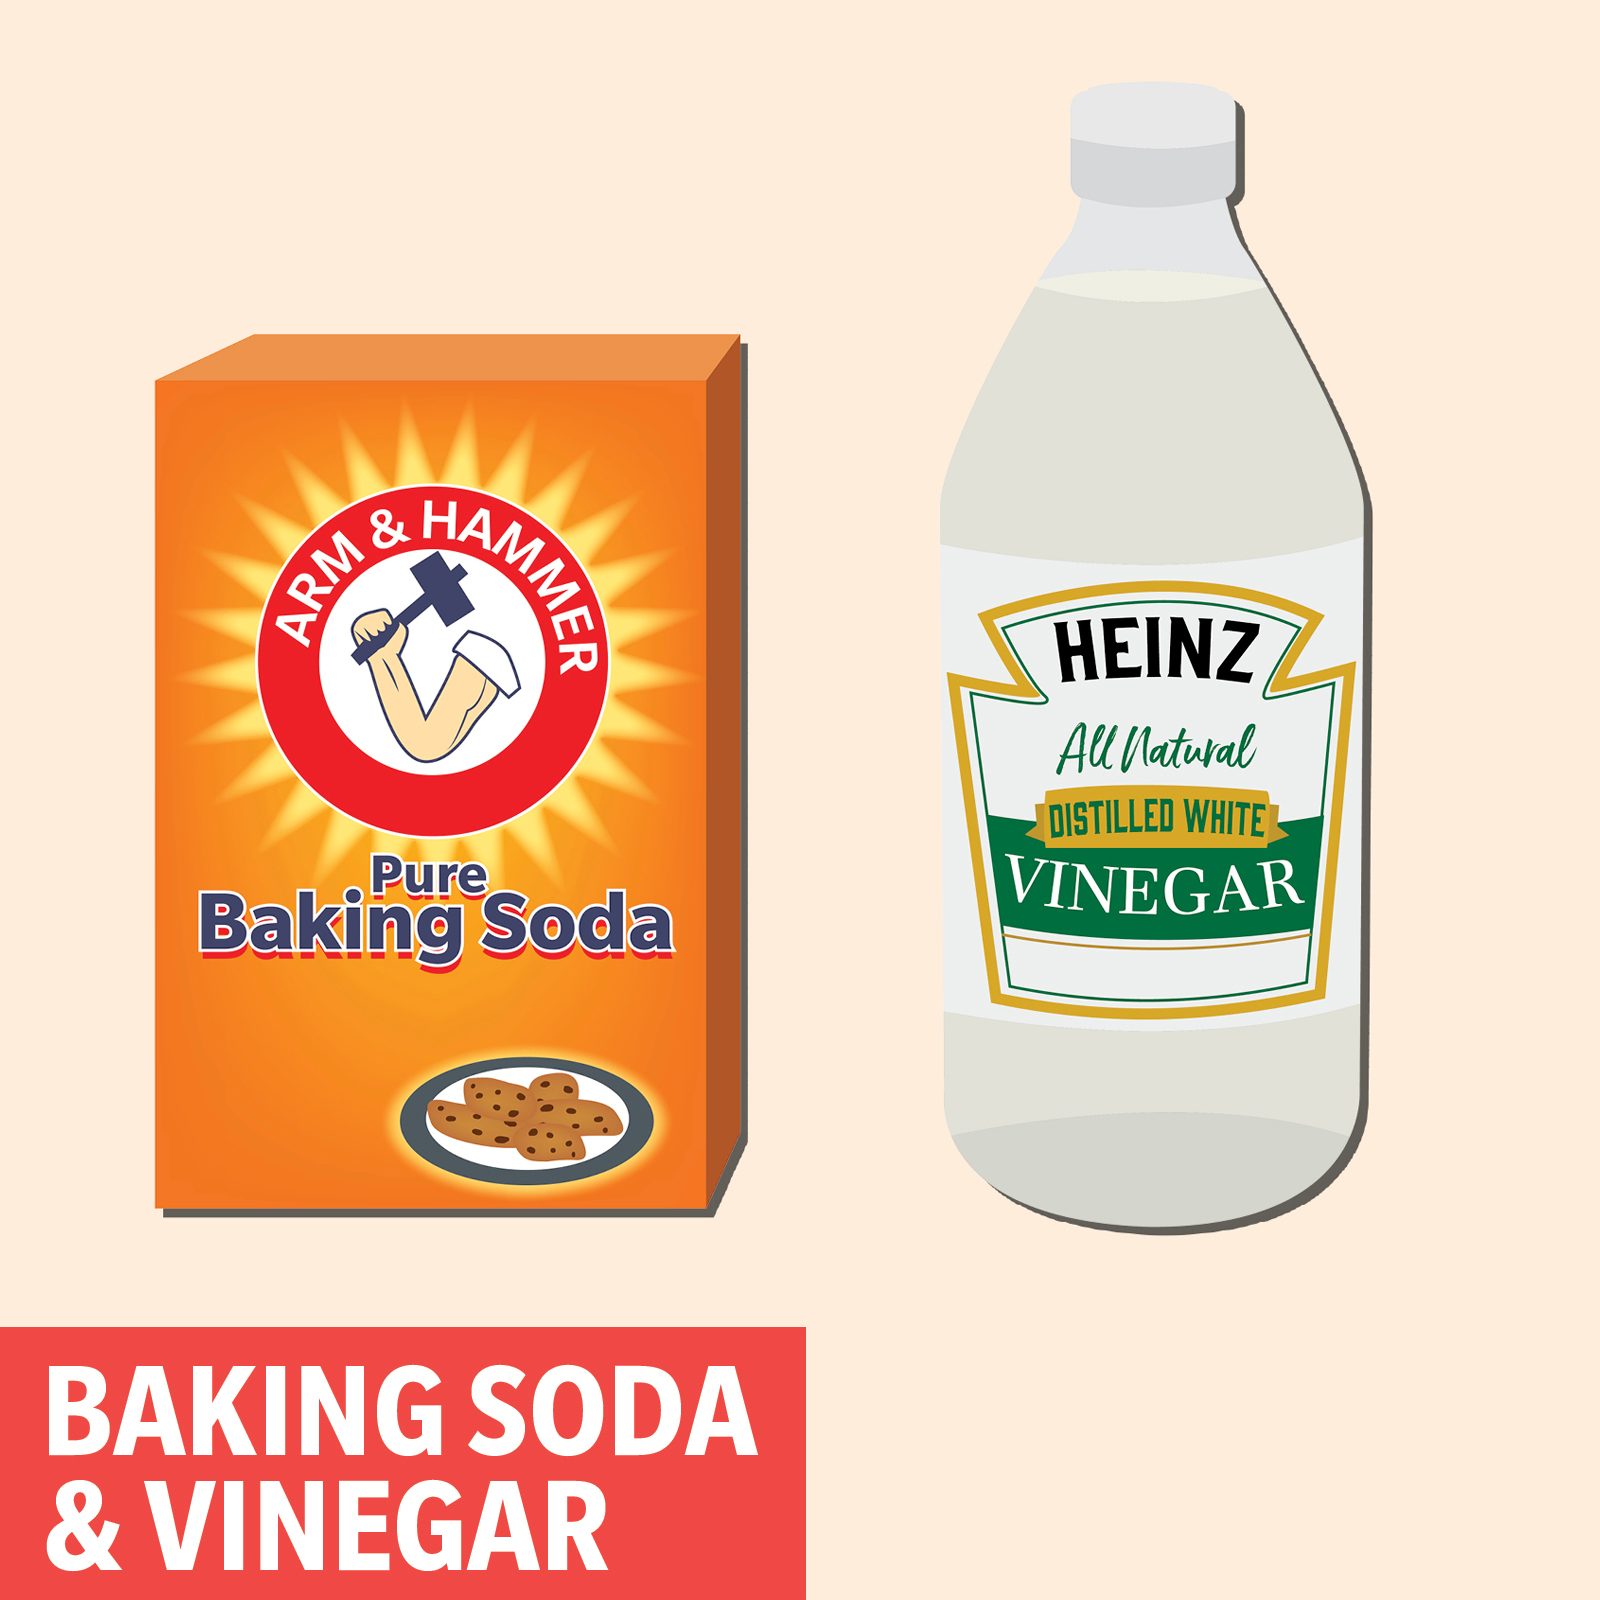 https://www.tasteofhome.com/wp-content/uploads/2018/12/baking-soda-and-vinegar-2.jpg?fit=700%2C700